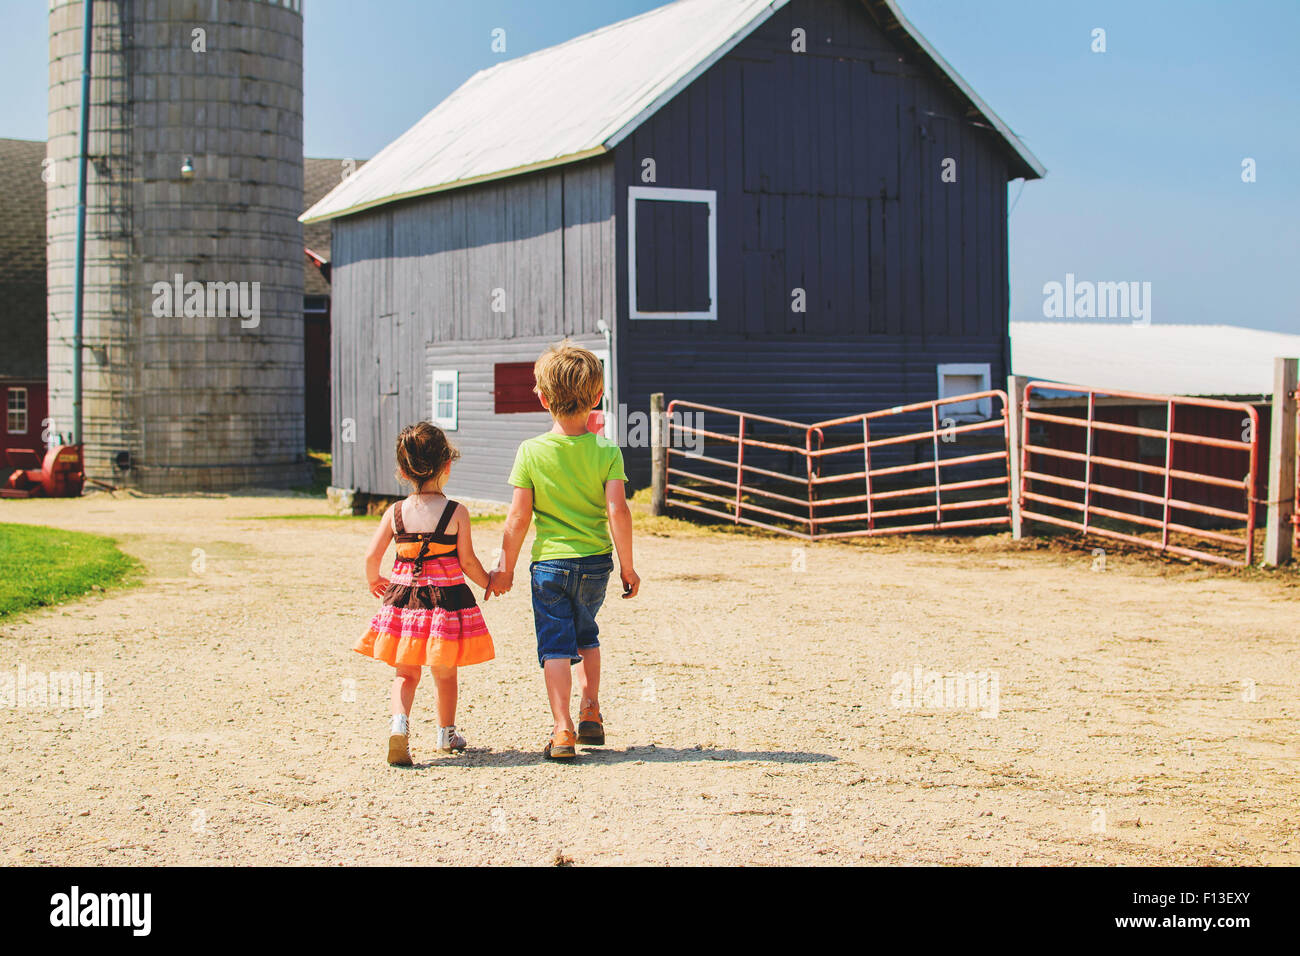 Rückansicht eines Mädchens und Jungen, das die Hände hält, auf dem Weg zu den Bauernhäusern, USA Stockfoto